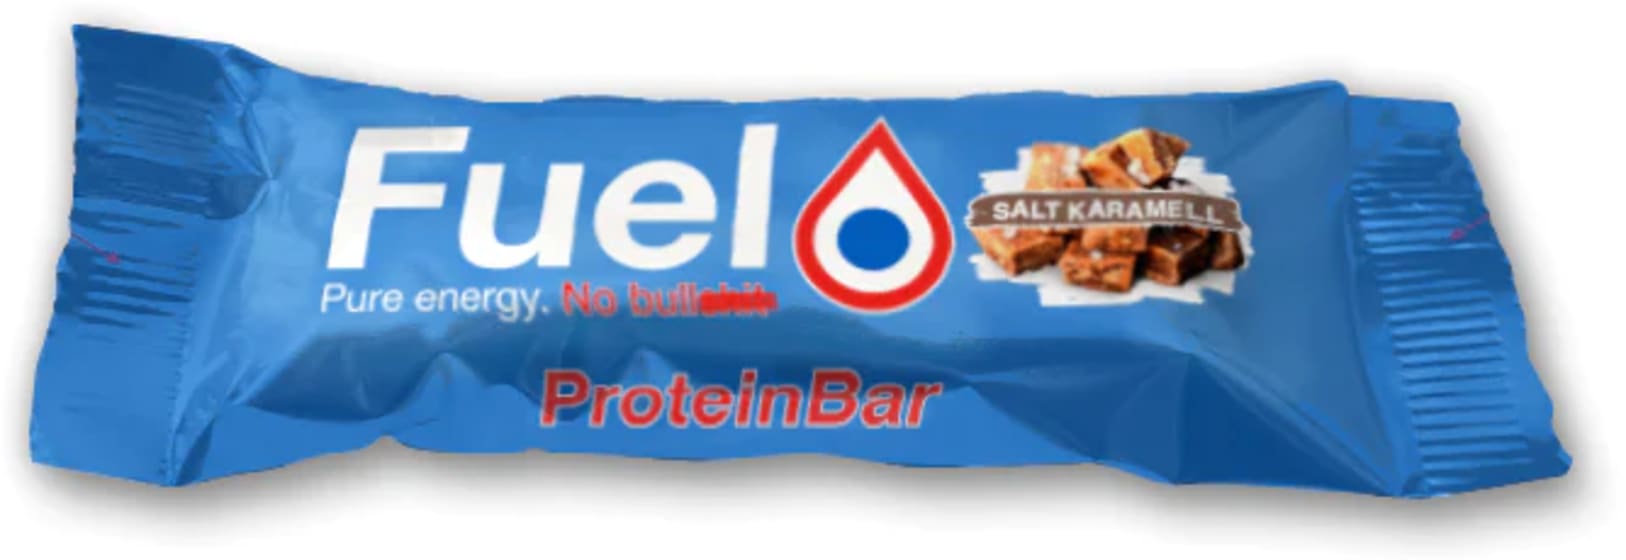 ProteinBar Salt Karamell 50g